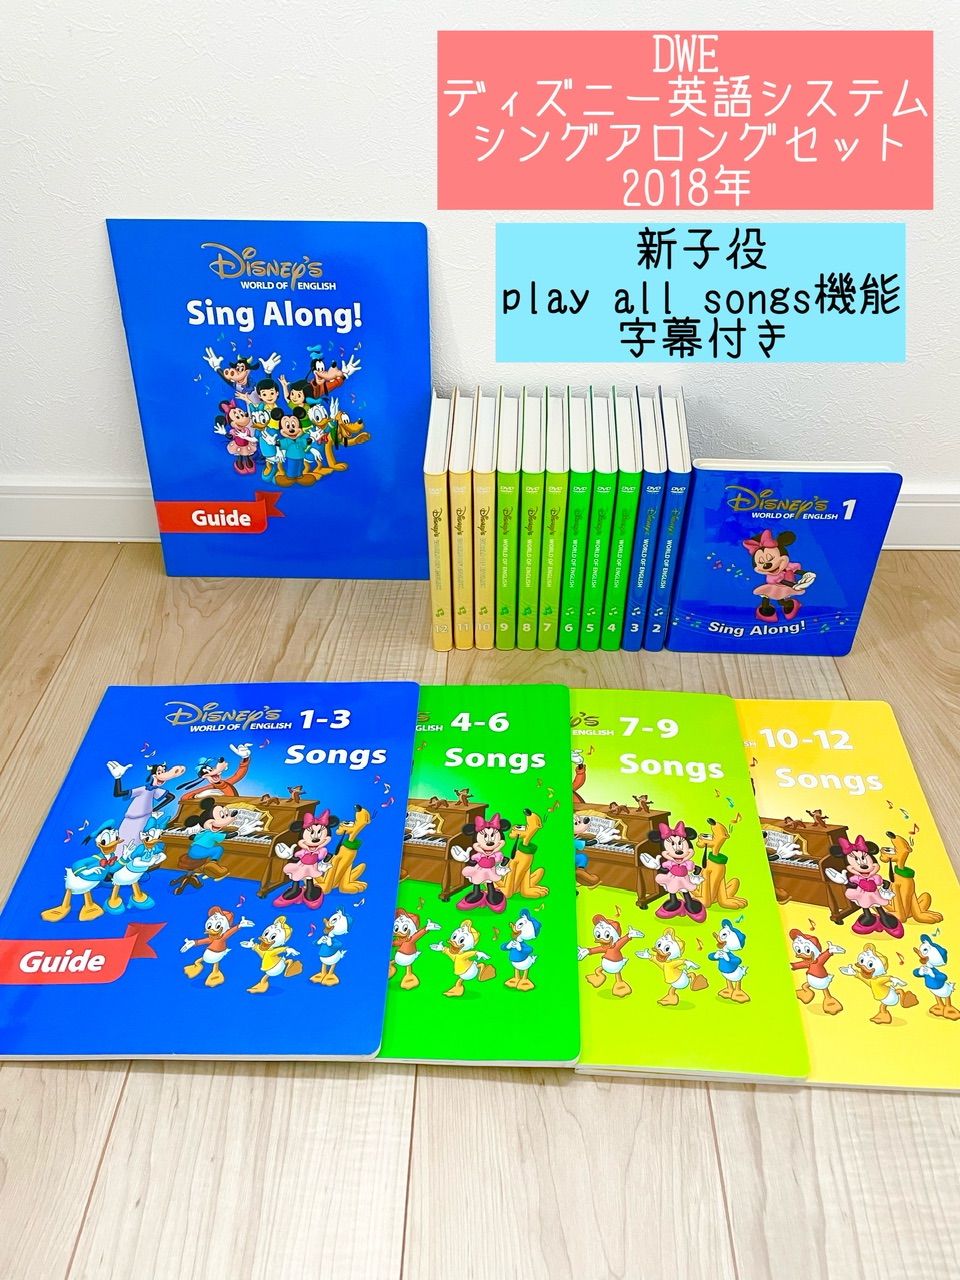 ディズニー英語システム【DWE】Sing along DVD12枚 - 知育玩具